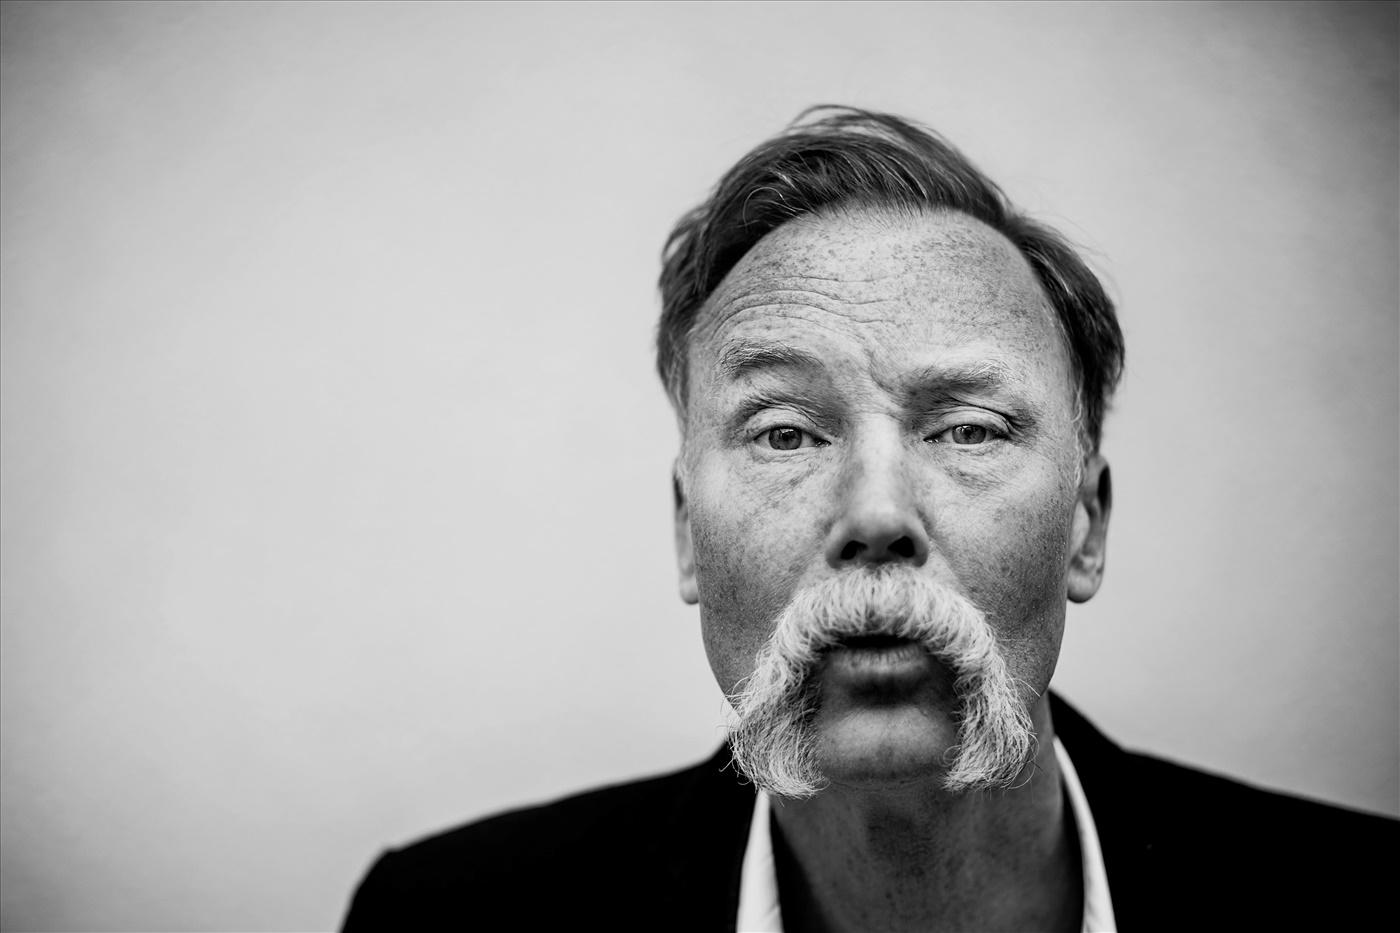 UKON, Ulf Karl Olov Nilsson (född 1965), är poet och psykoanalaytiker och har utkommit med ett flertal verk i olika genrer sedan debuten 1990. ”Jag är ingen mördare” är den första diktsamlingen sedan 2011.